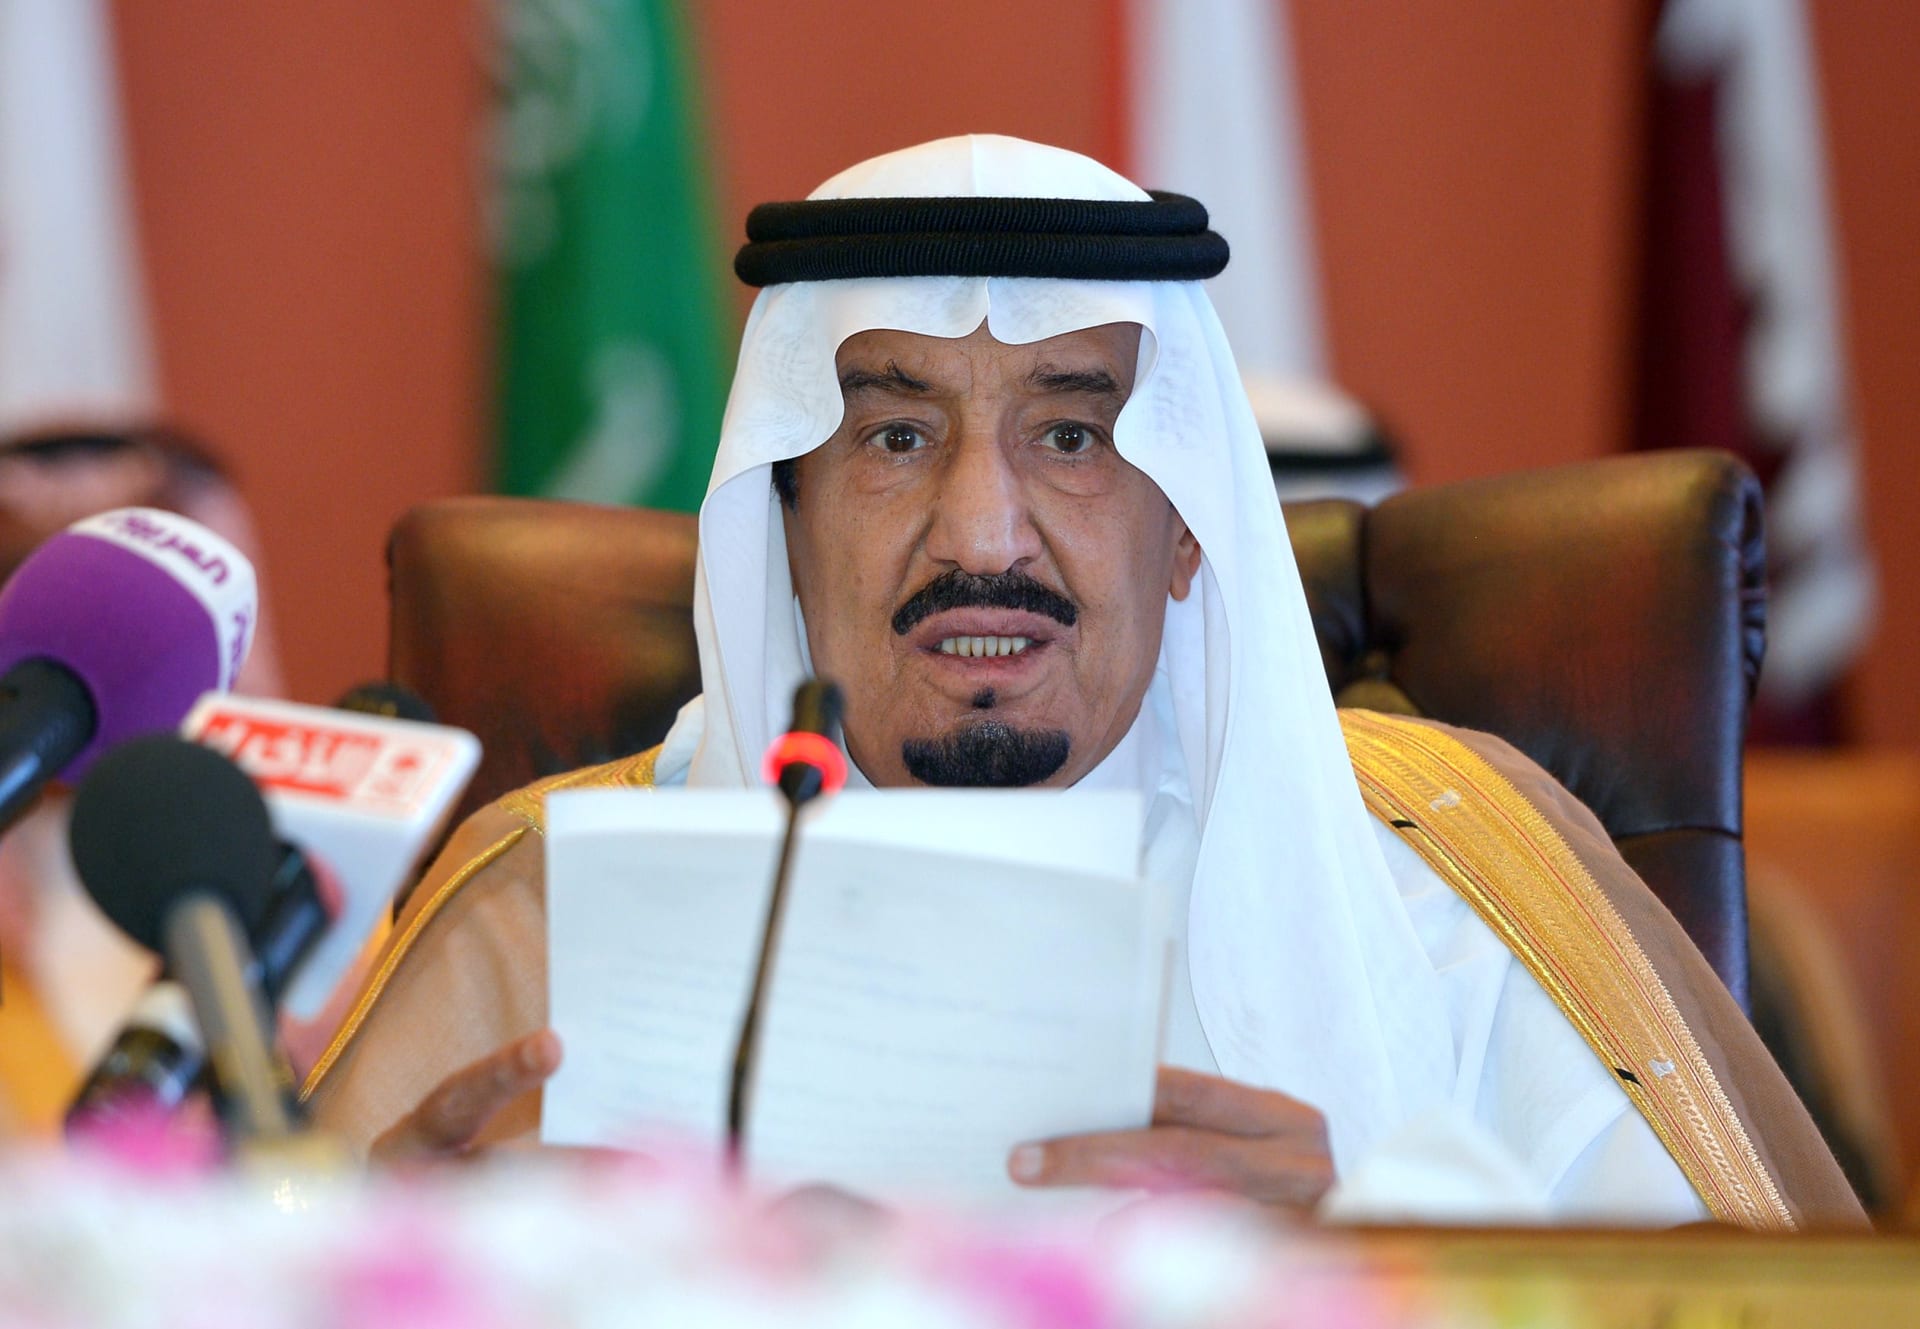 ملك السعودية عن هجوم أرامكو: قادرون على التعامل مع "الاعتداءات الجبانة"